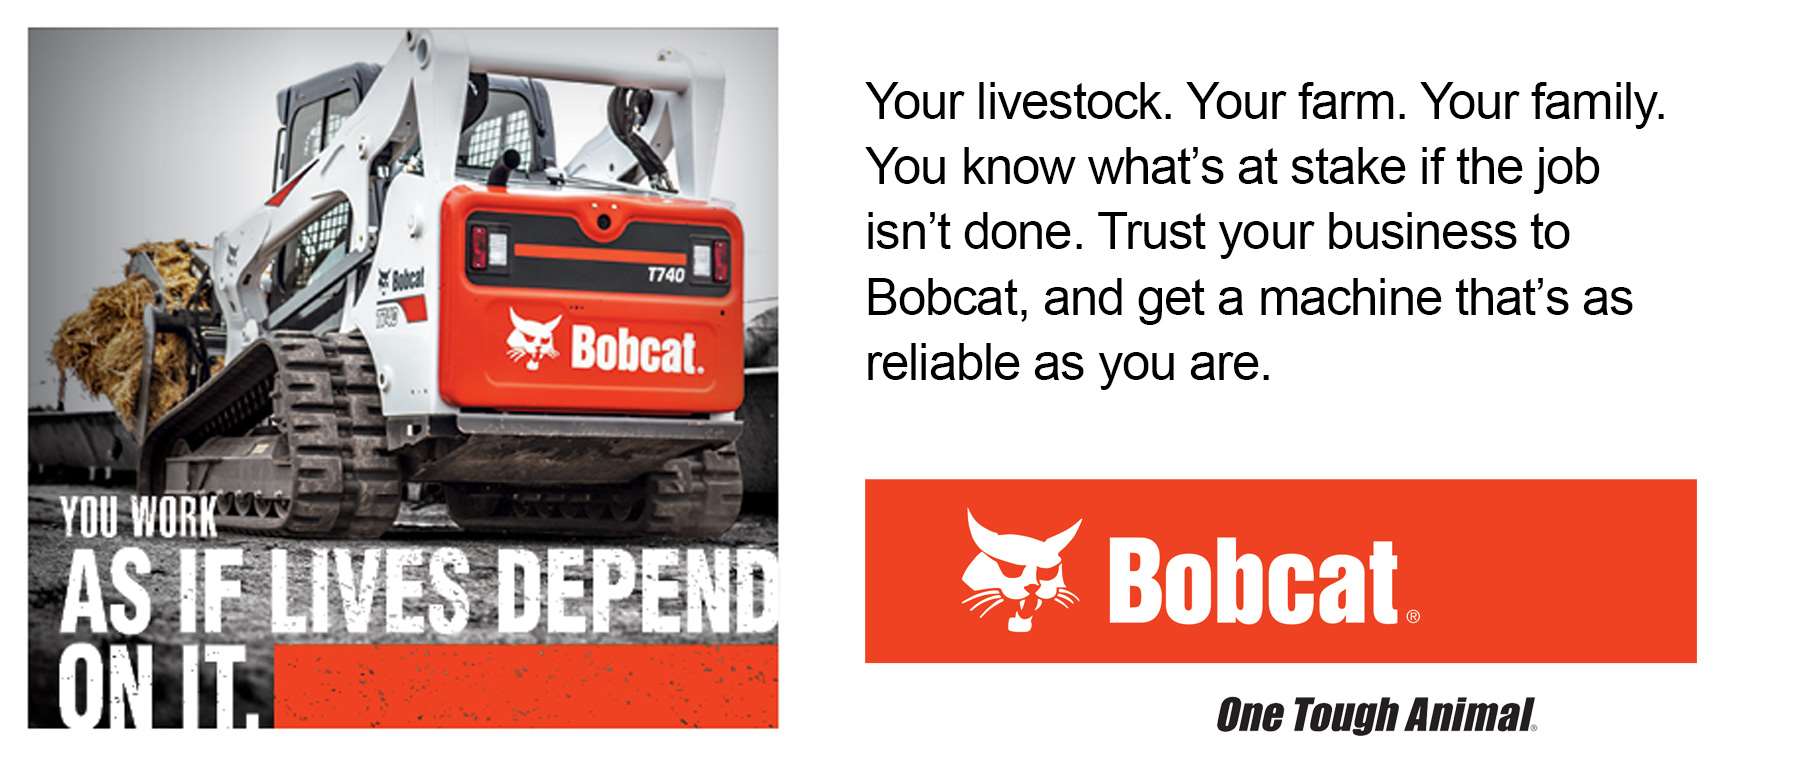 Bobcat - your work